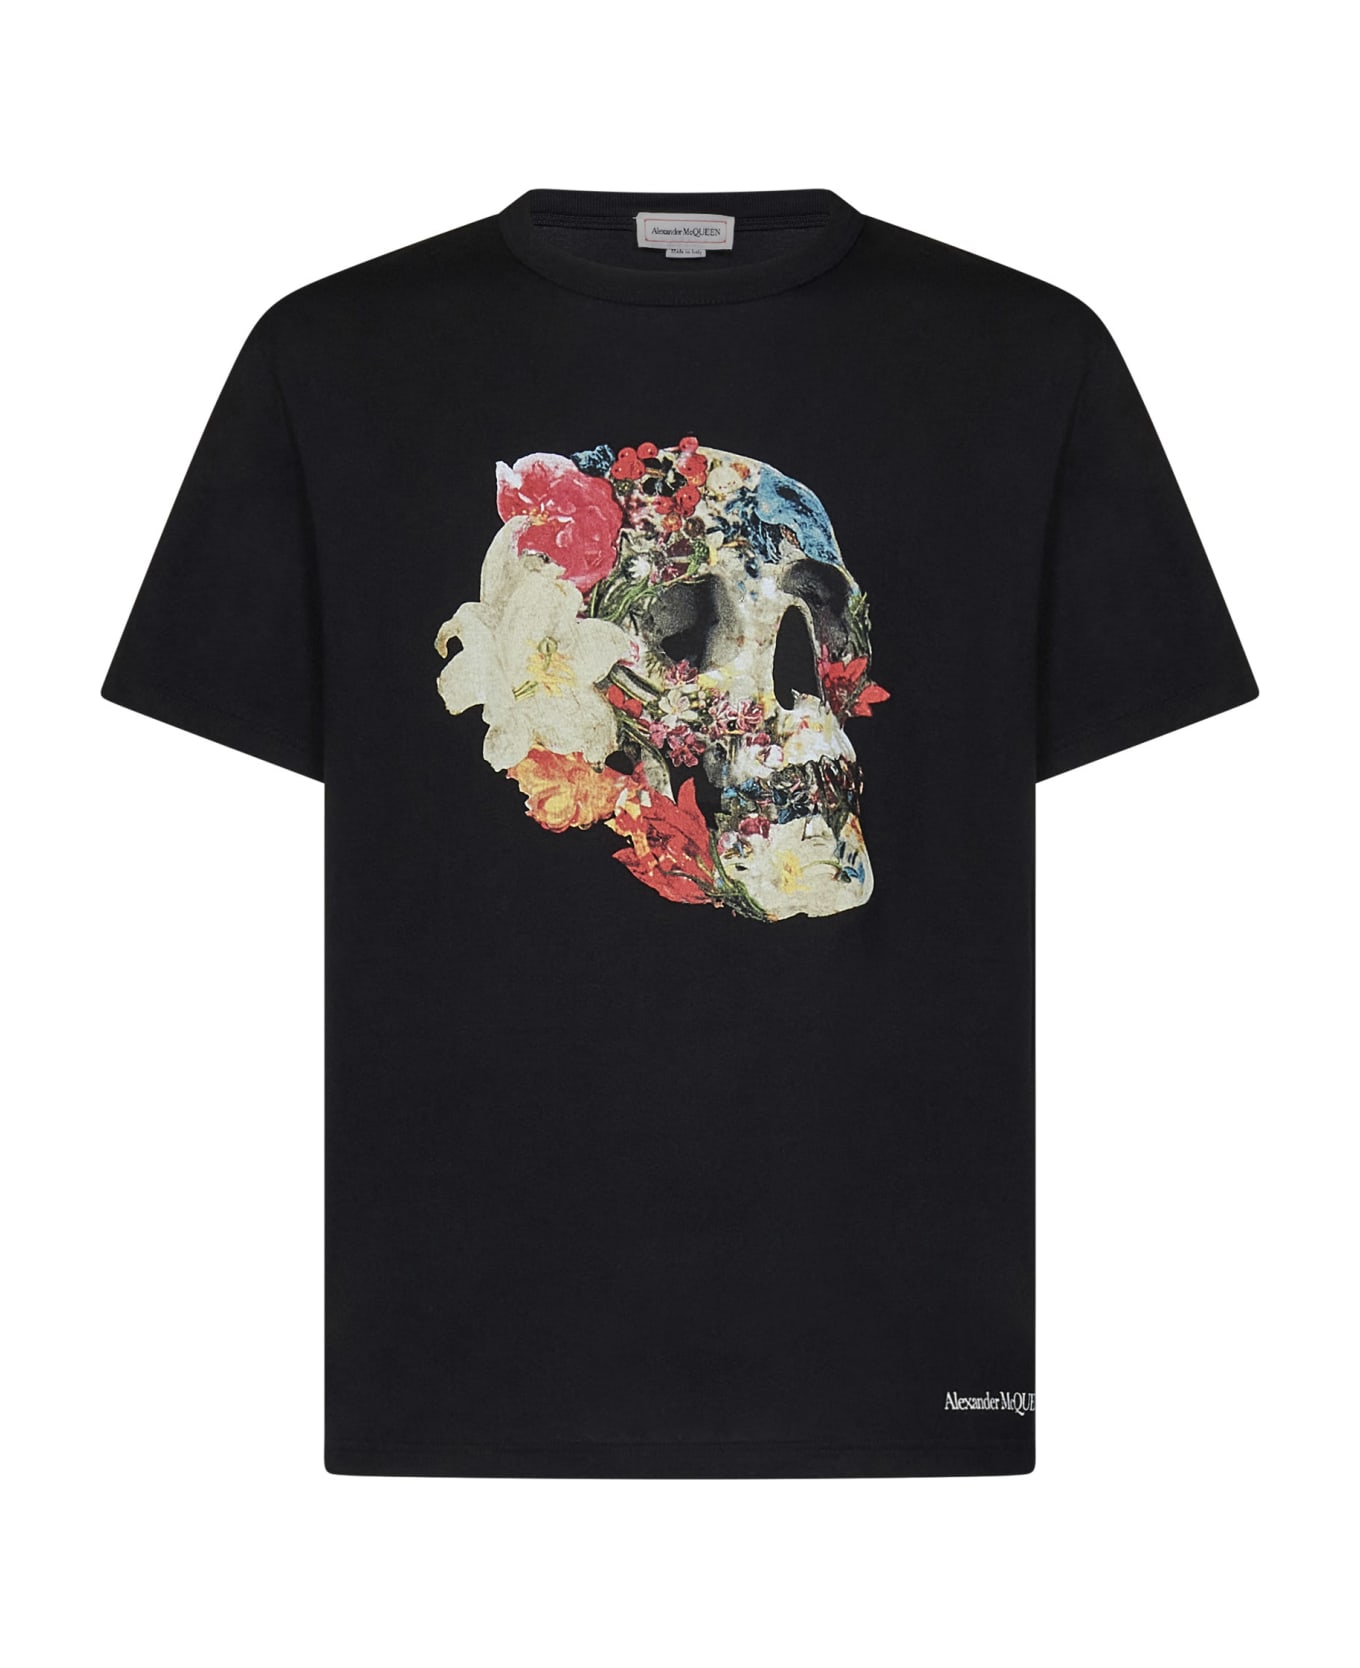 Alexander McQueen Floral Skull T-shirt - Black